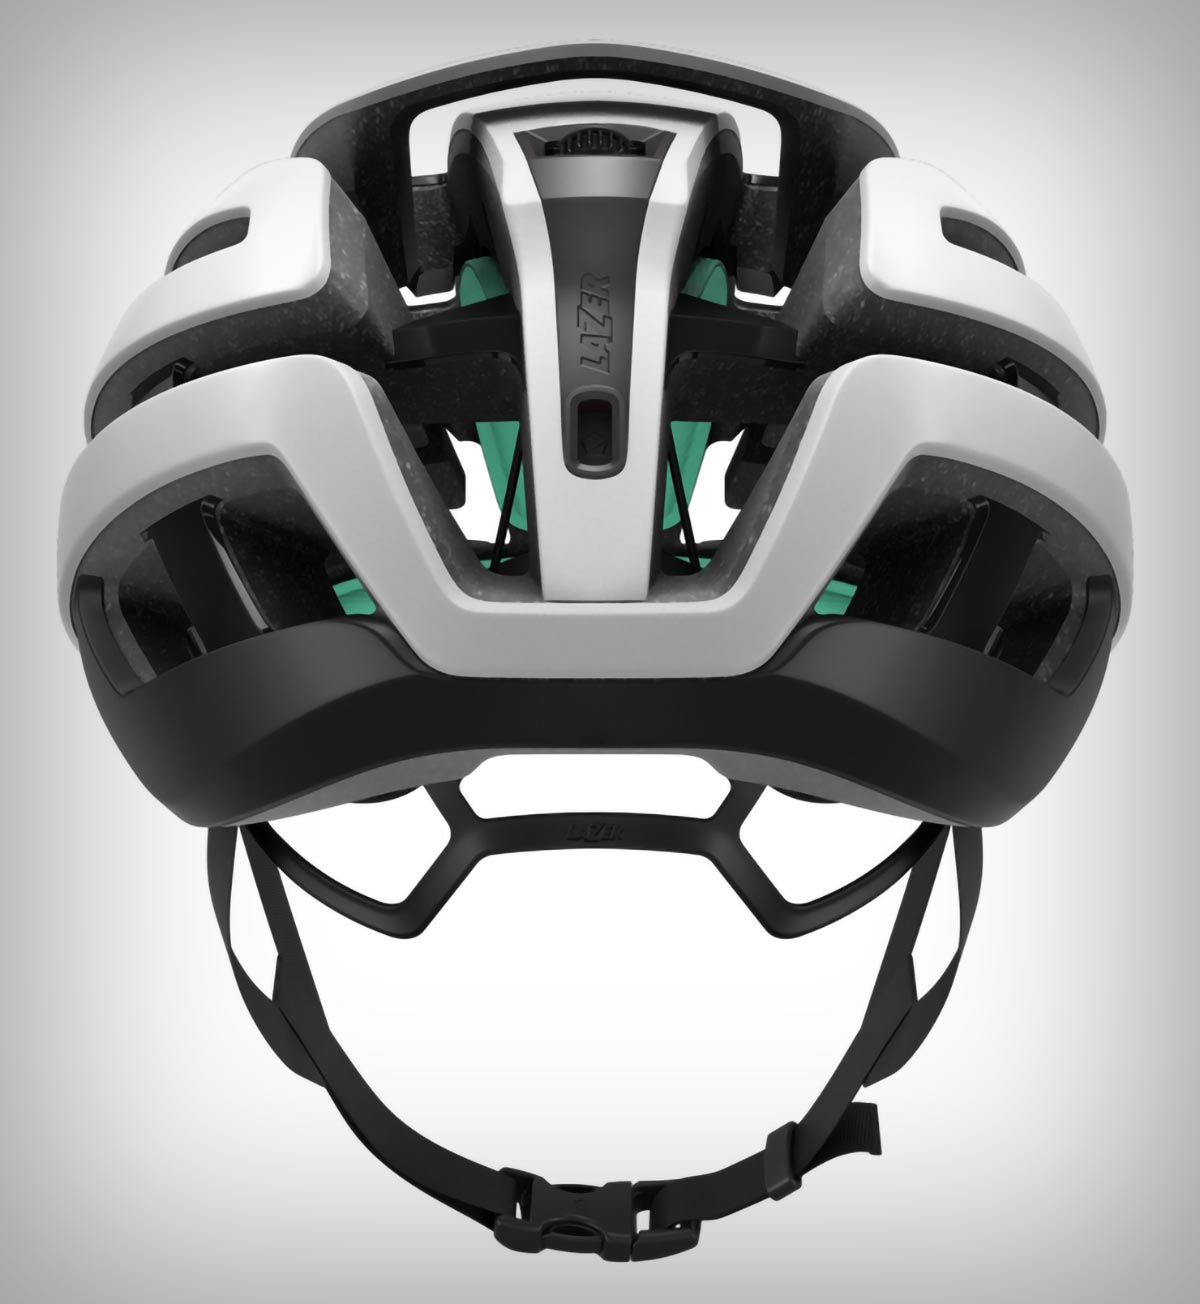 Lazer Z1 Kineticore, un casco reinventado para convertirse en el modelo con protección contra impactos rotacionales más ligero del mercado